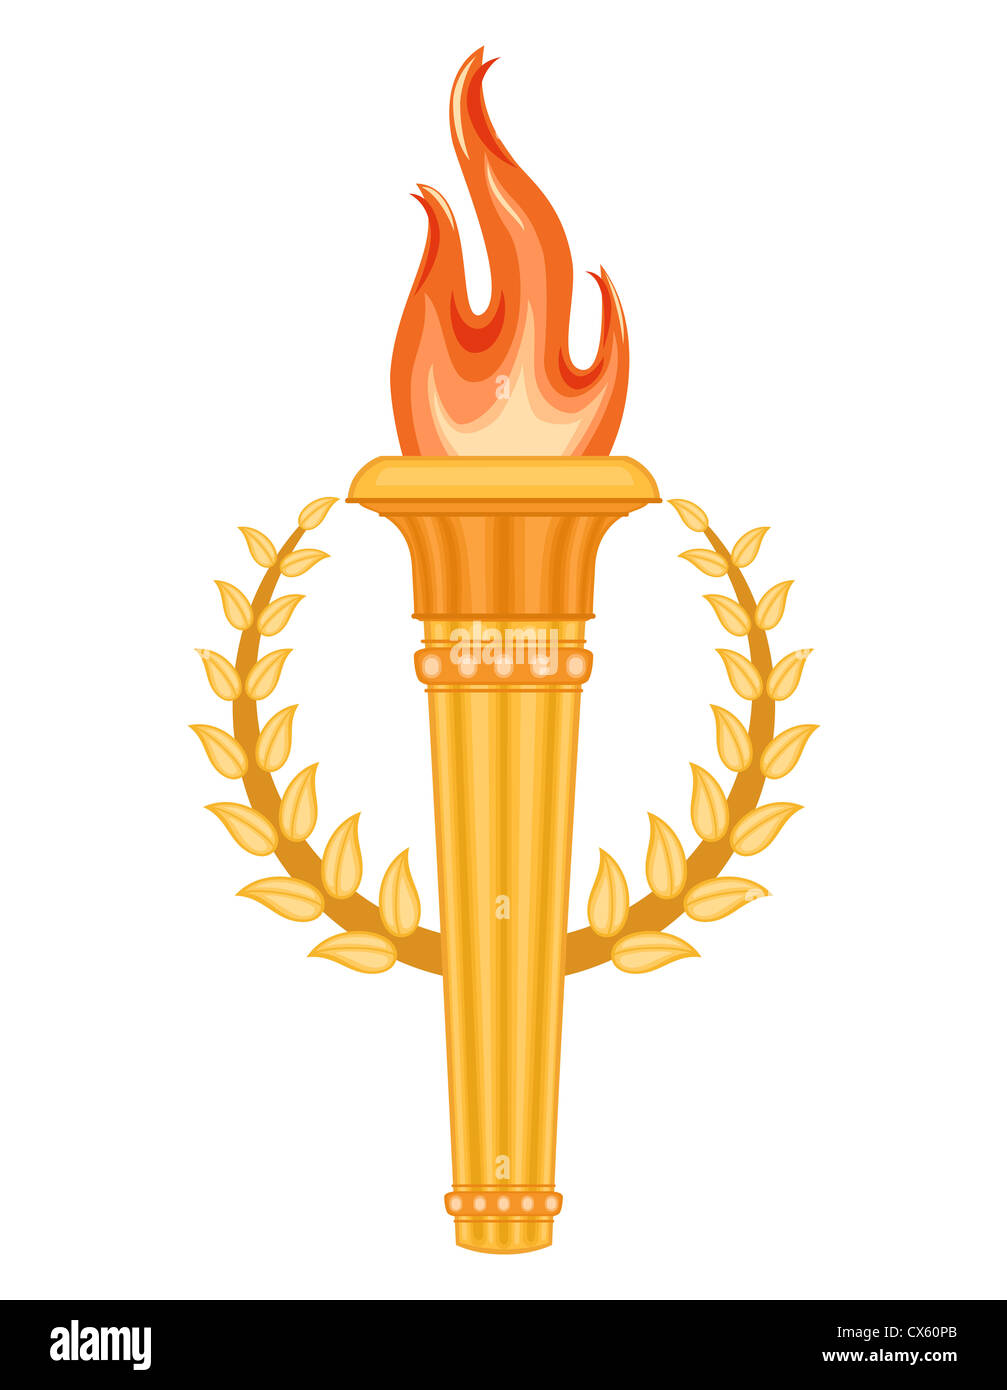 Griechische Olympische Fackel mit Goldener Krone von Lorbeeren. Olympischen Spiele Spiele Symbol. Isoliert auf weißem Hintergrund. Stockfoto